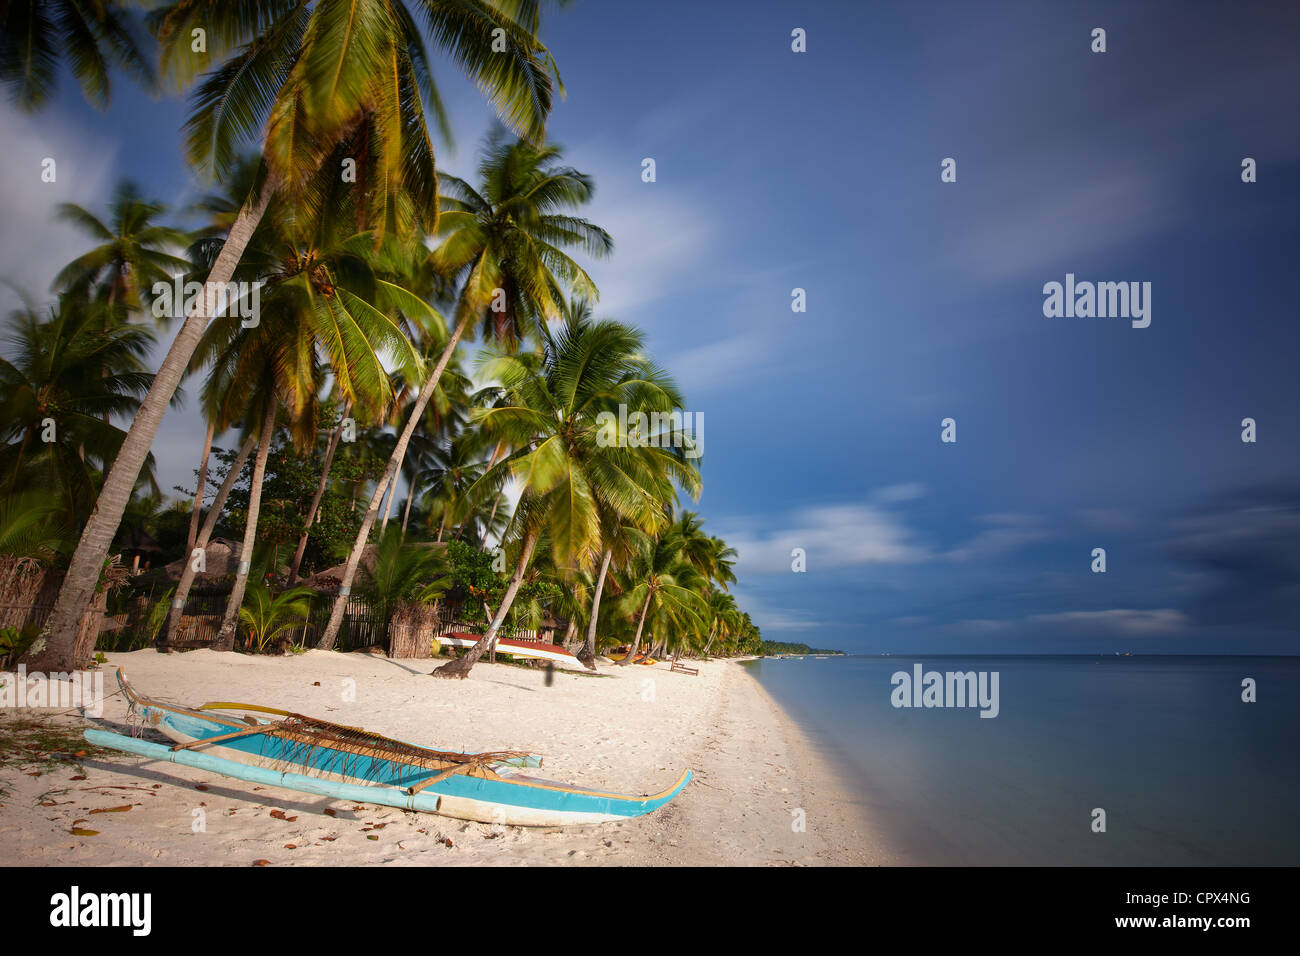 Les palmiers se balançant dans le vent, la plage de San Juan, les Visayas, Siquijor, Philippines Banque D'Images